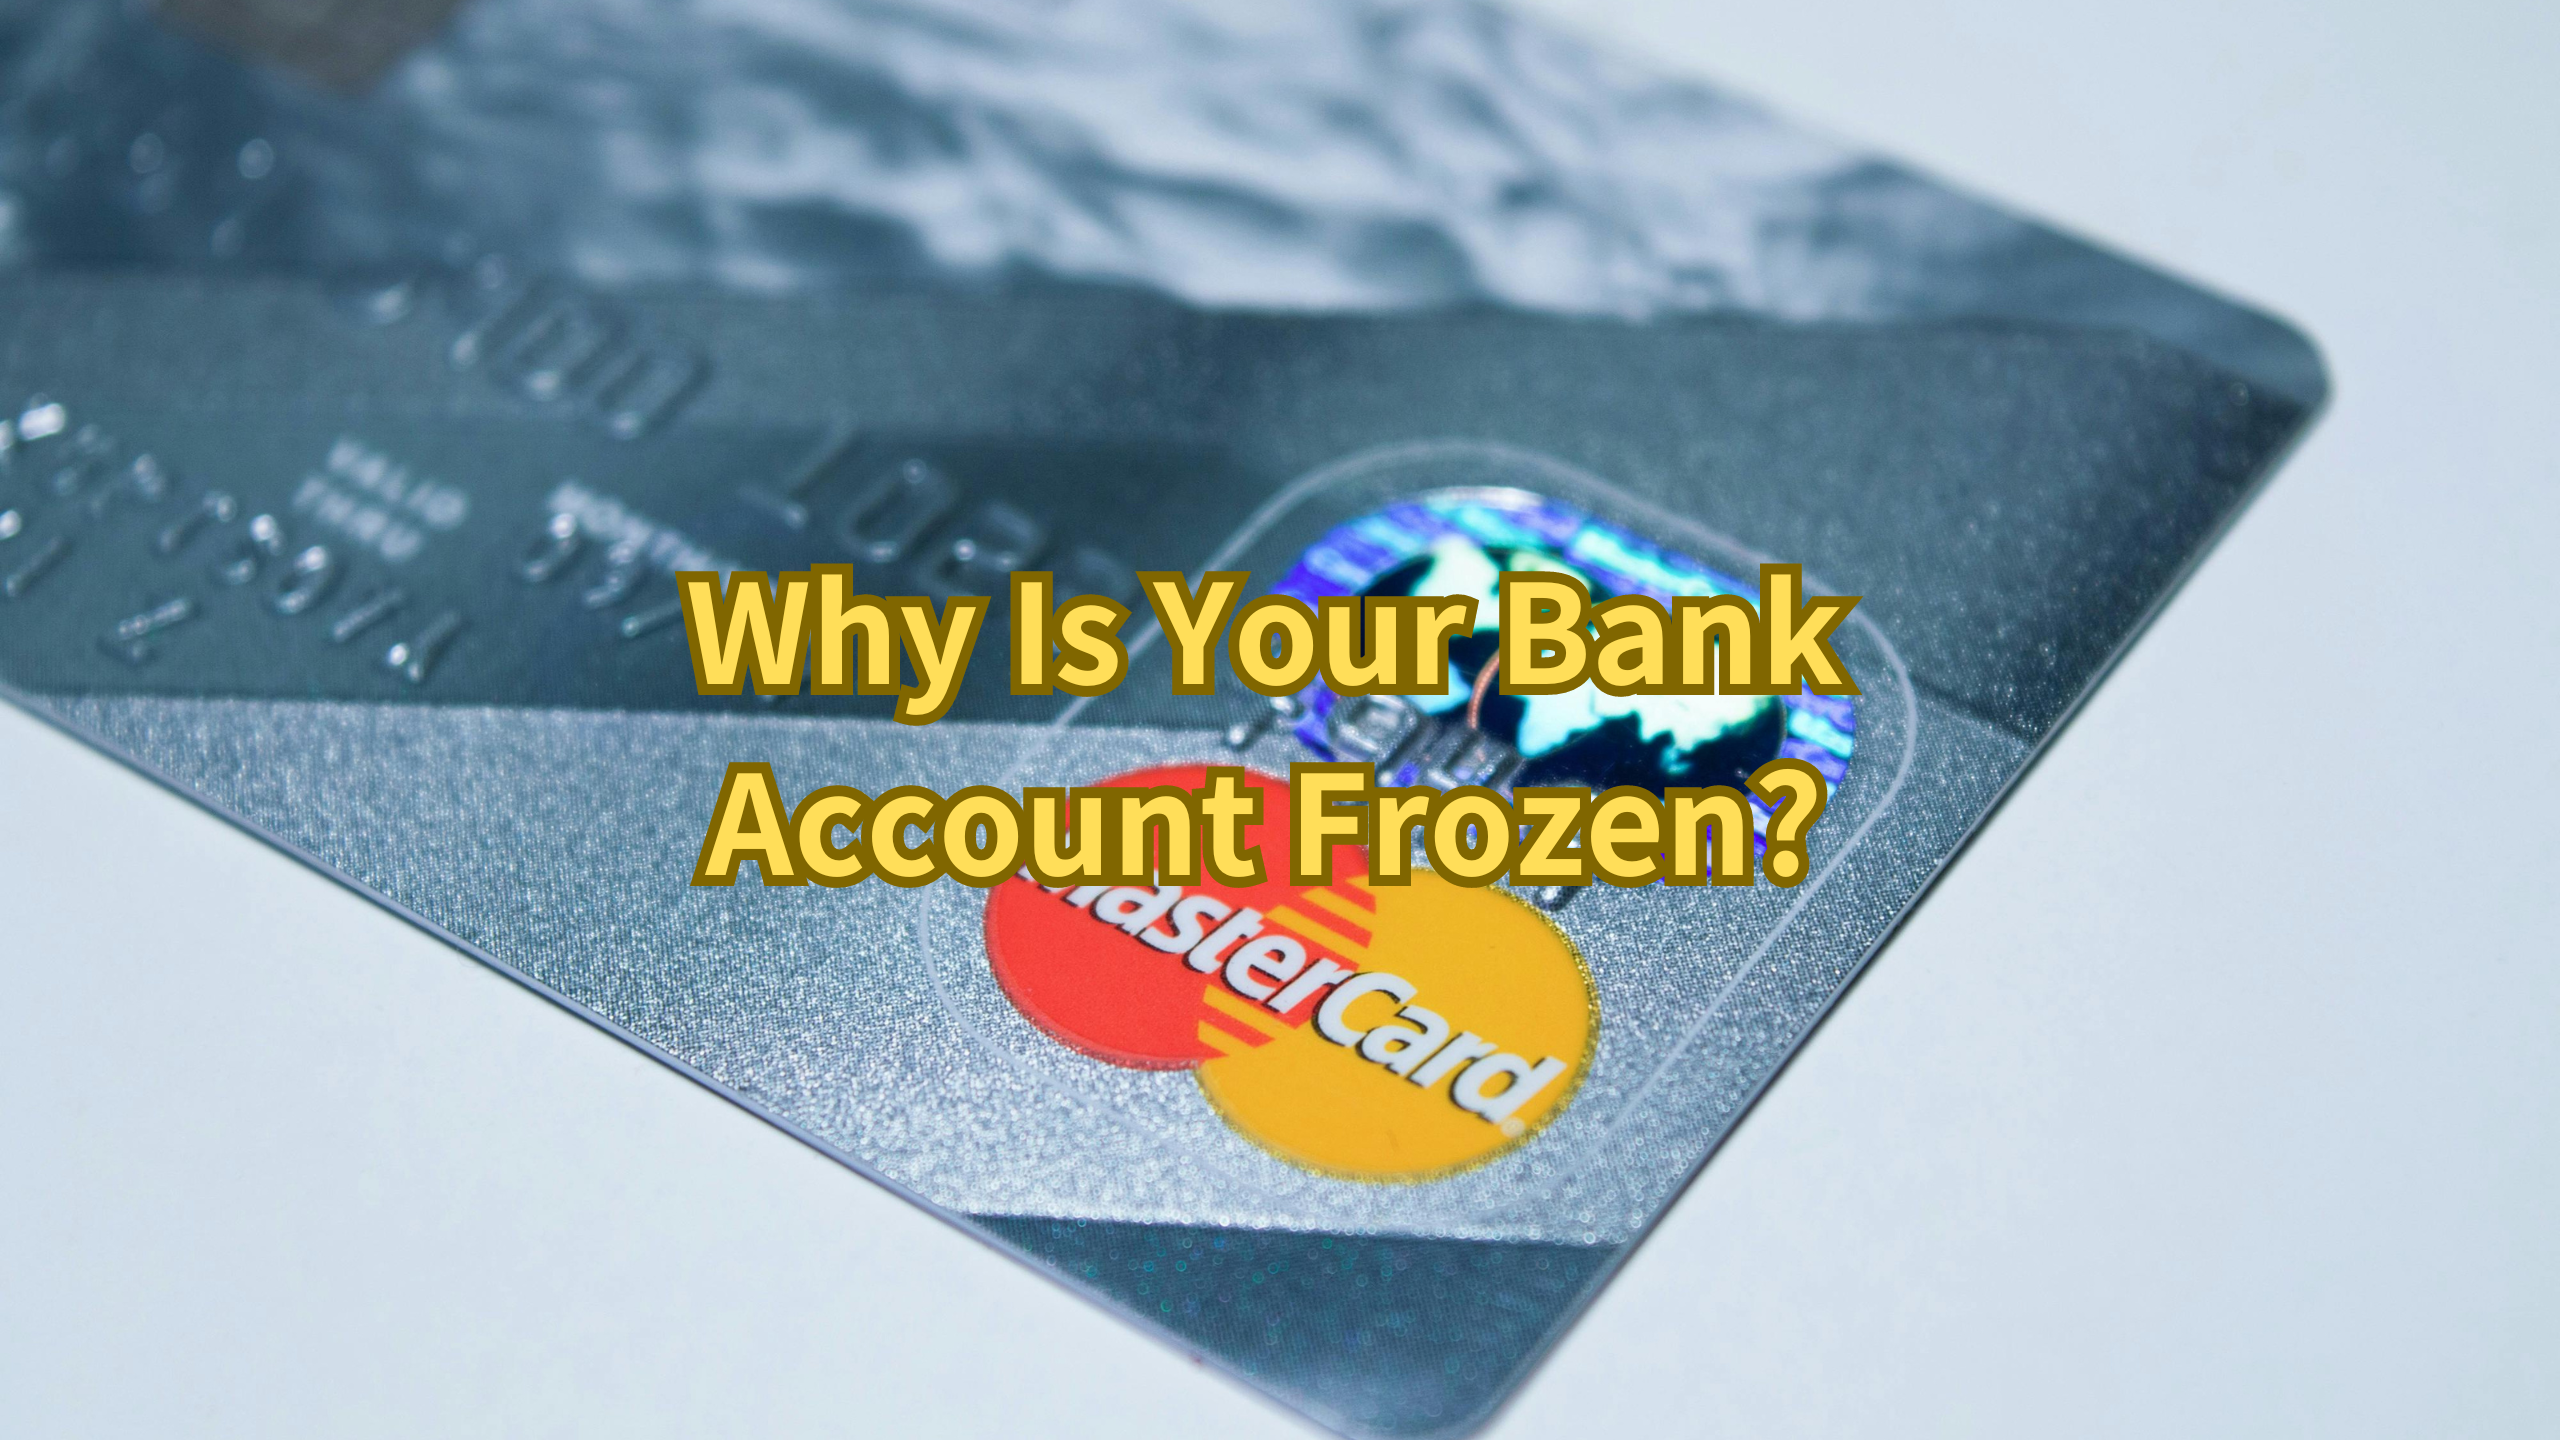 Bank Account Frozen